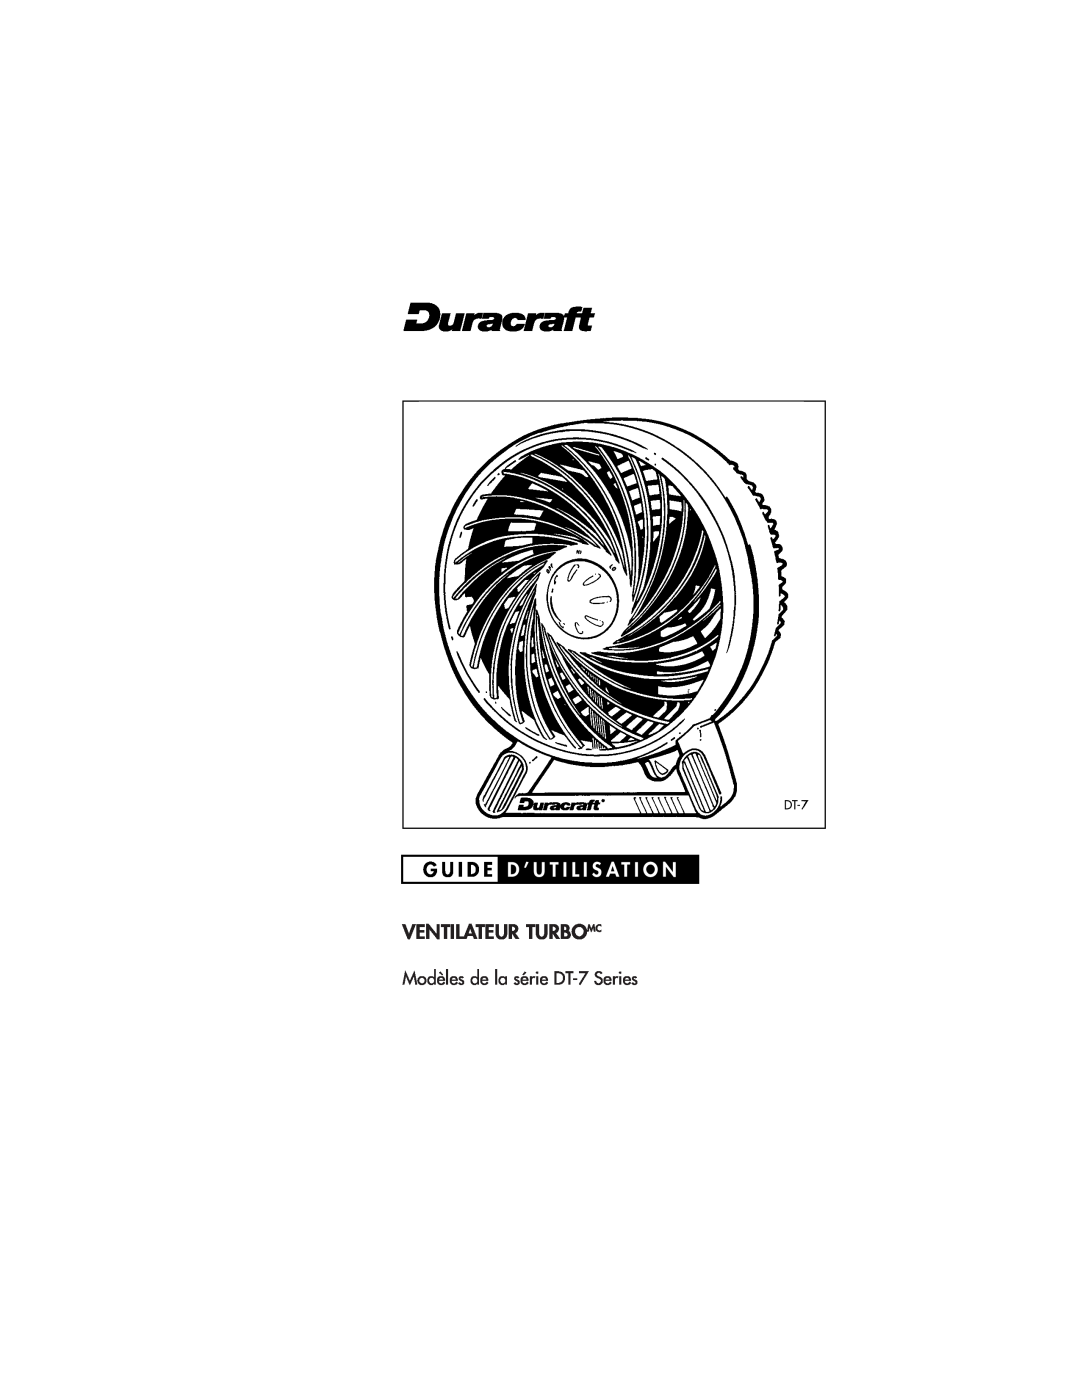 Duracraft pmnDT-7 Series owner manual G U I D E D ’ U T I L I S At I O N, Ventilateur Turbomc 